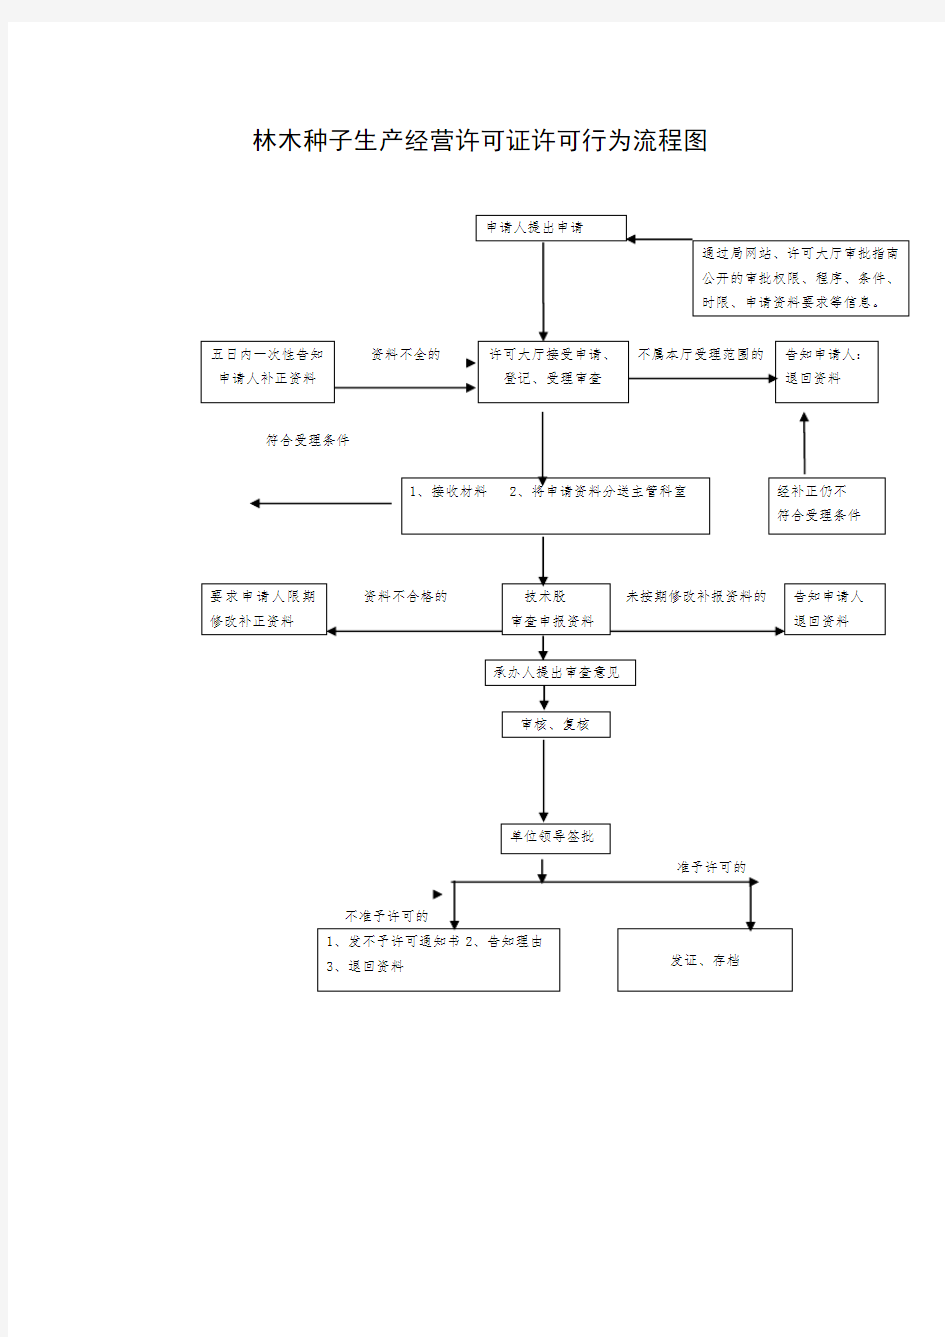 林木种子生产经营许可证许可行为流程图